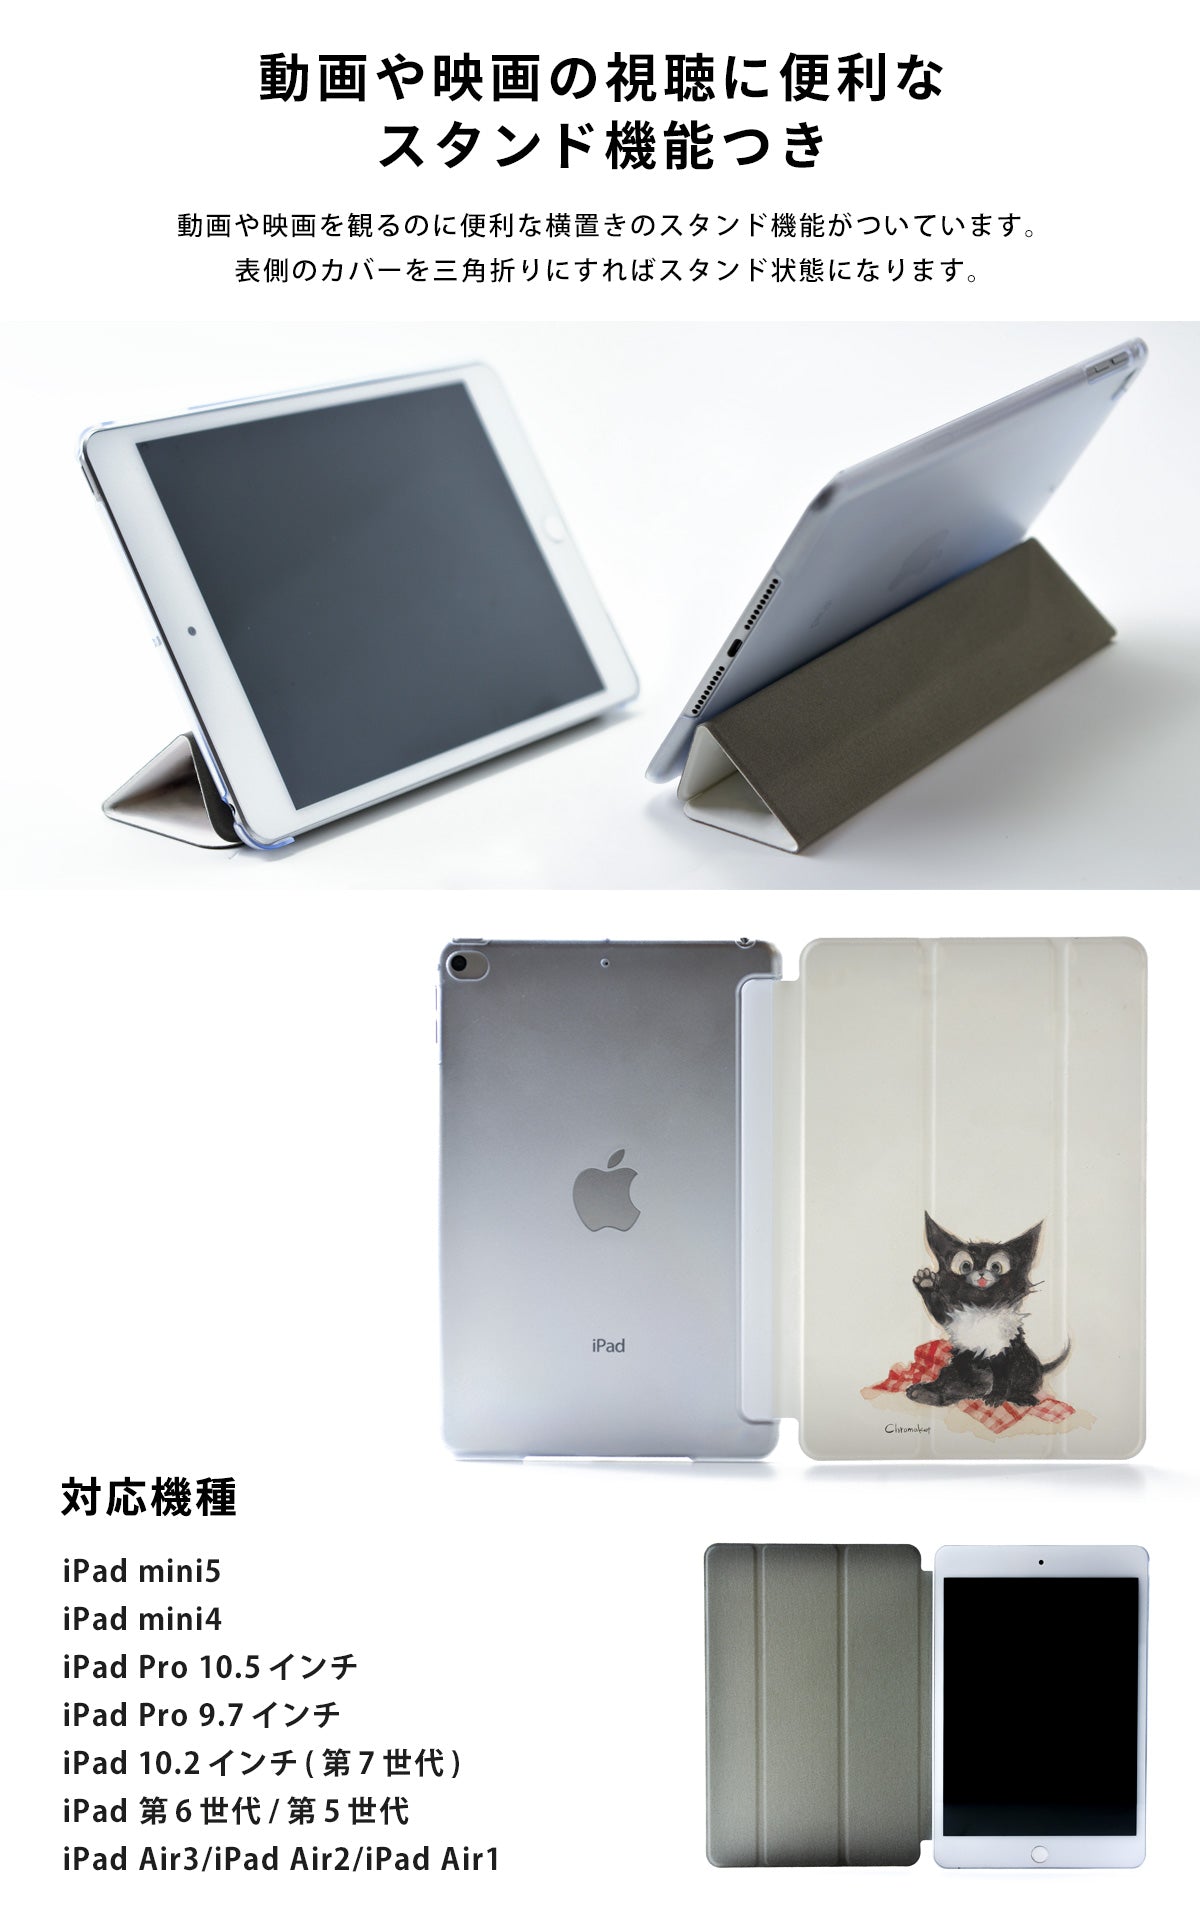 iPad Air2 Air1 iPad 2018 2017通用ケース スタンド - その他